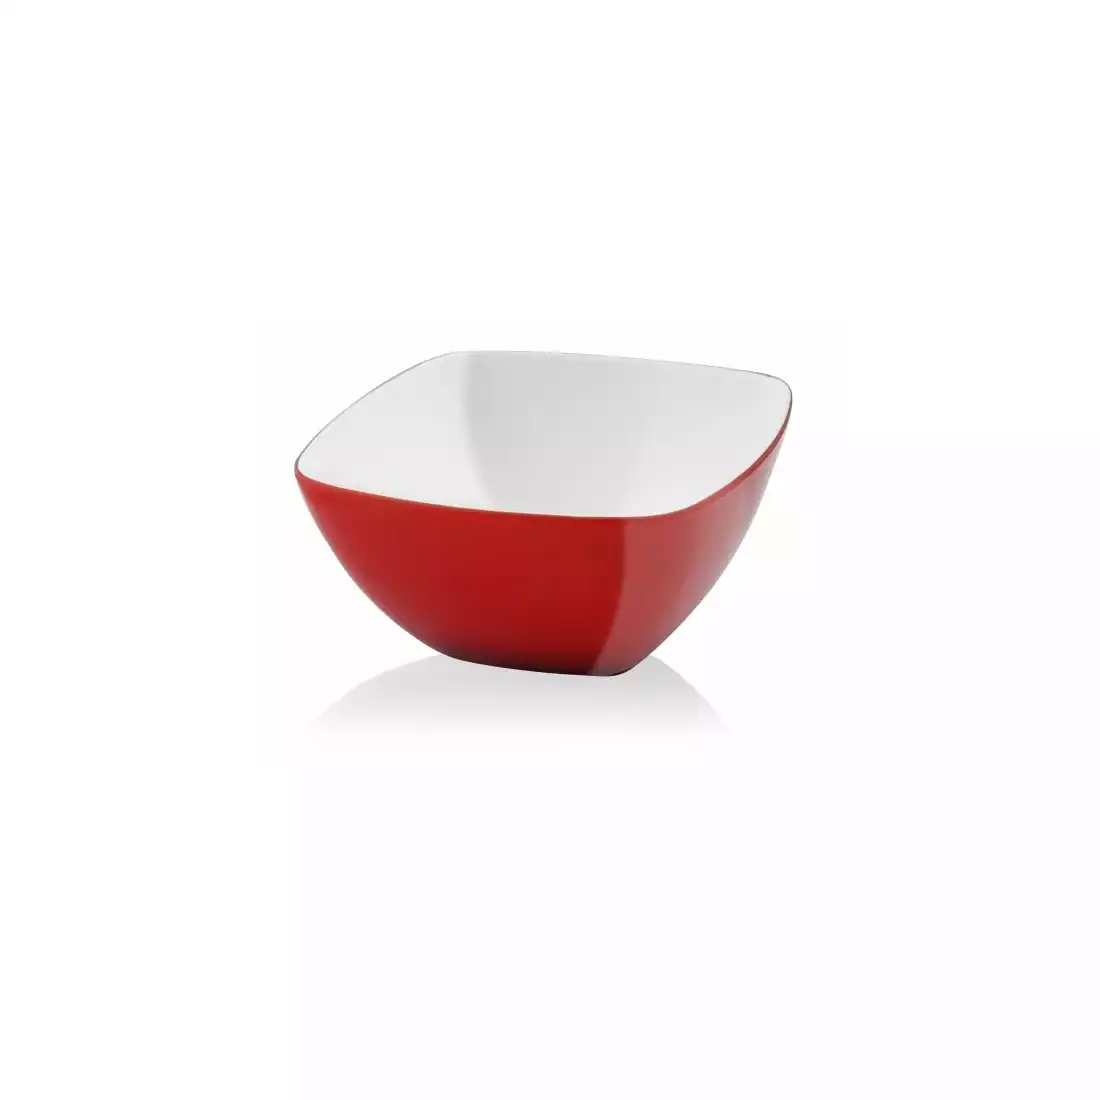 VIALLI DESIGN LIVIO square acrylic bowl, red